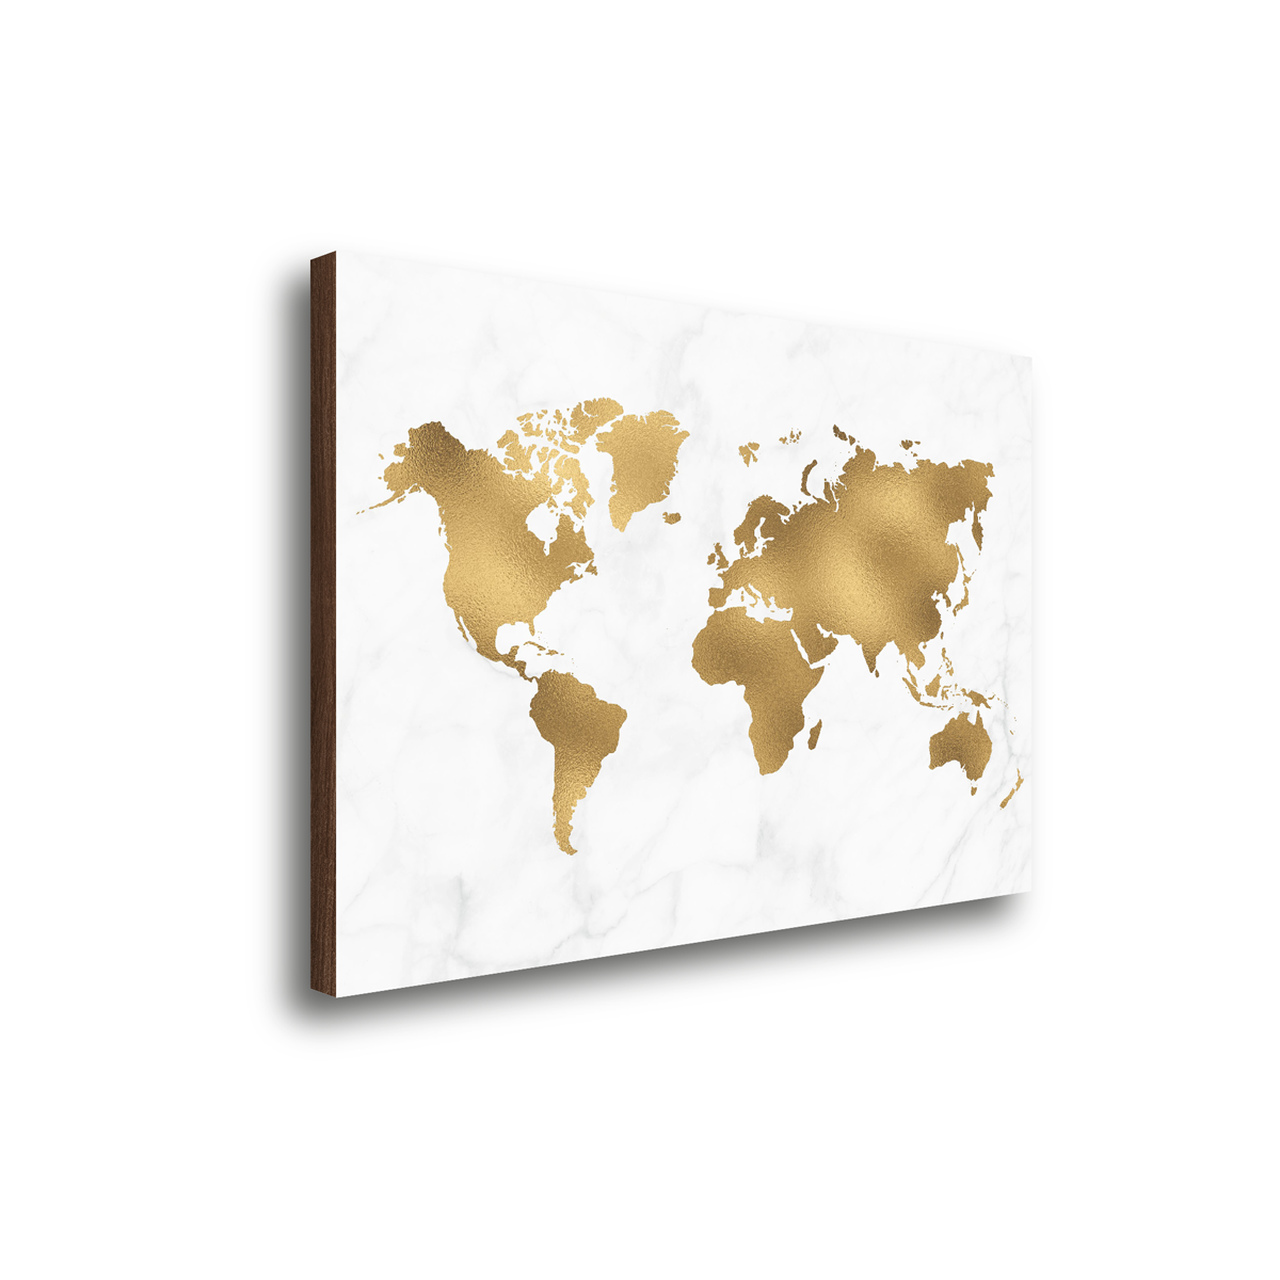 Fotografia de quadro com mapa mundi dourado